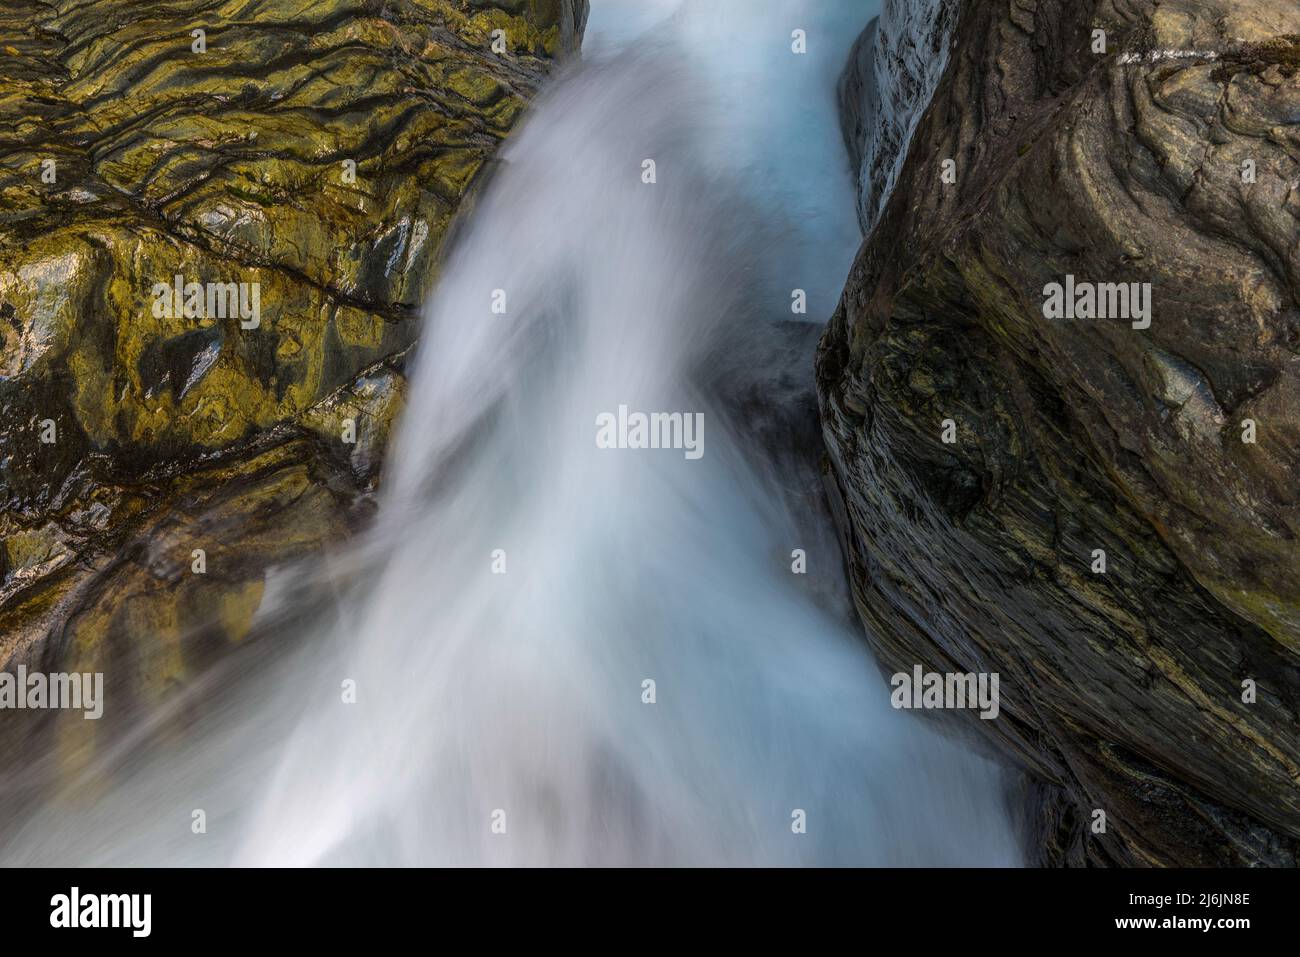 Tra le rocce cade un ruscello montano infestante di acqua limpida fotografata con la sfocatura del movimento. Foto Stock